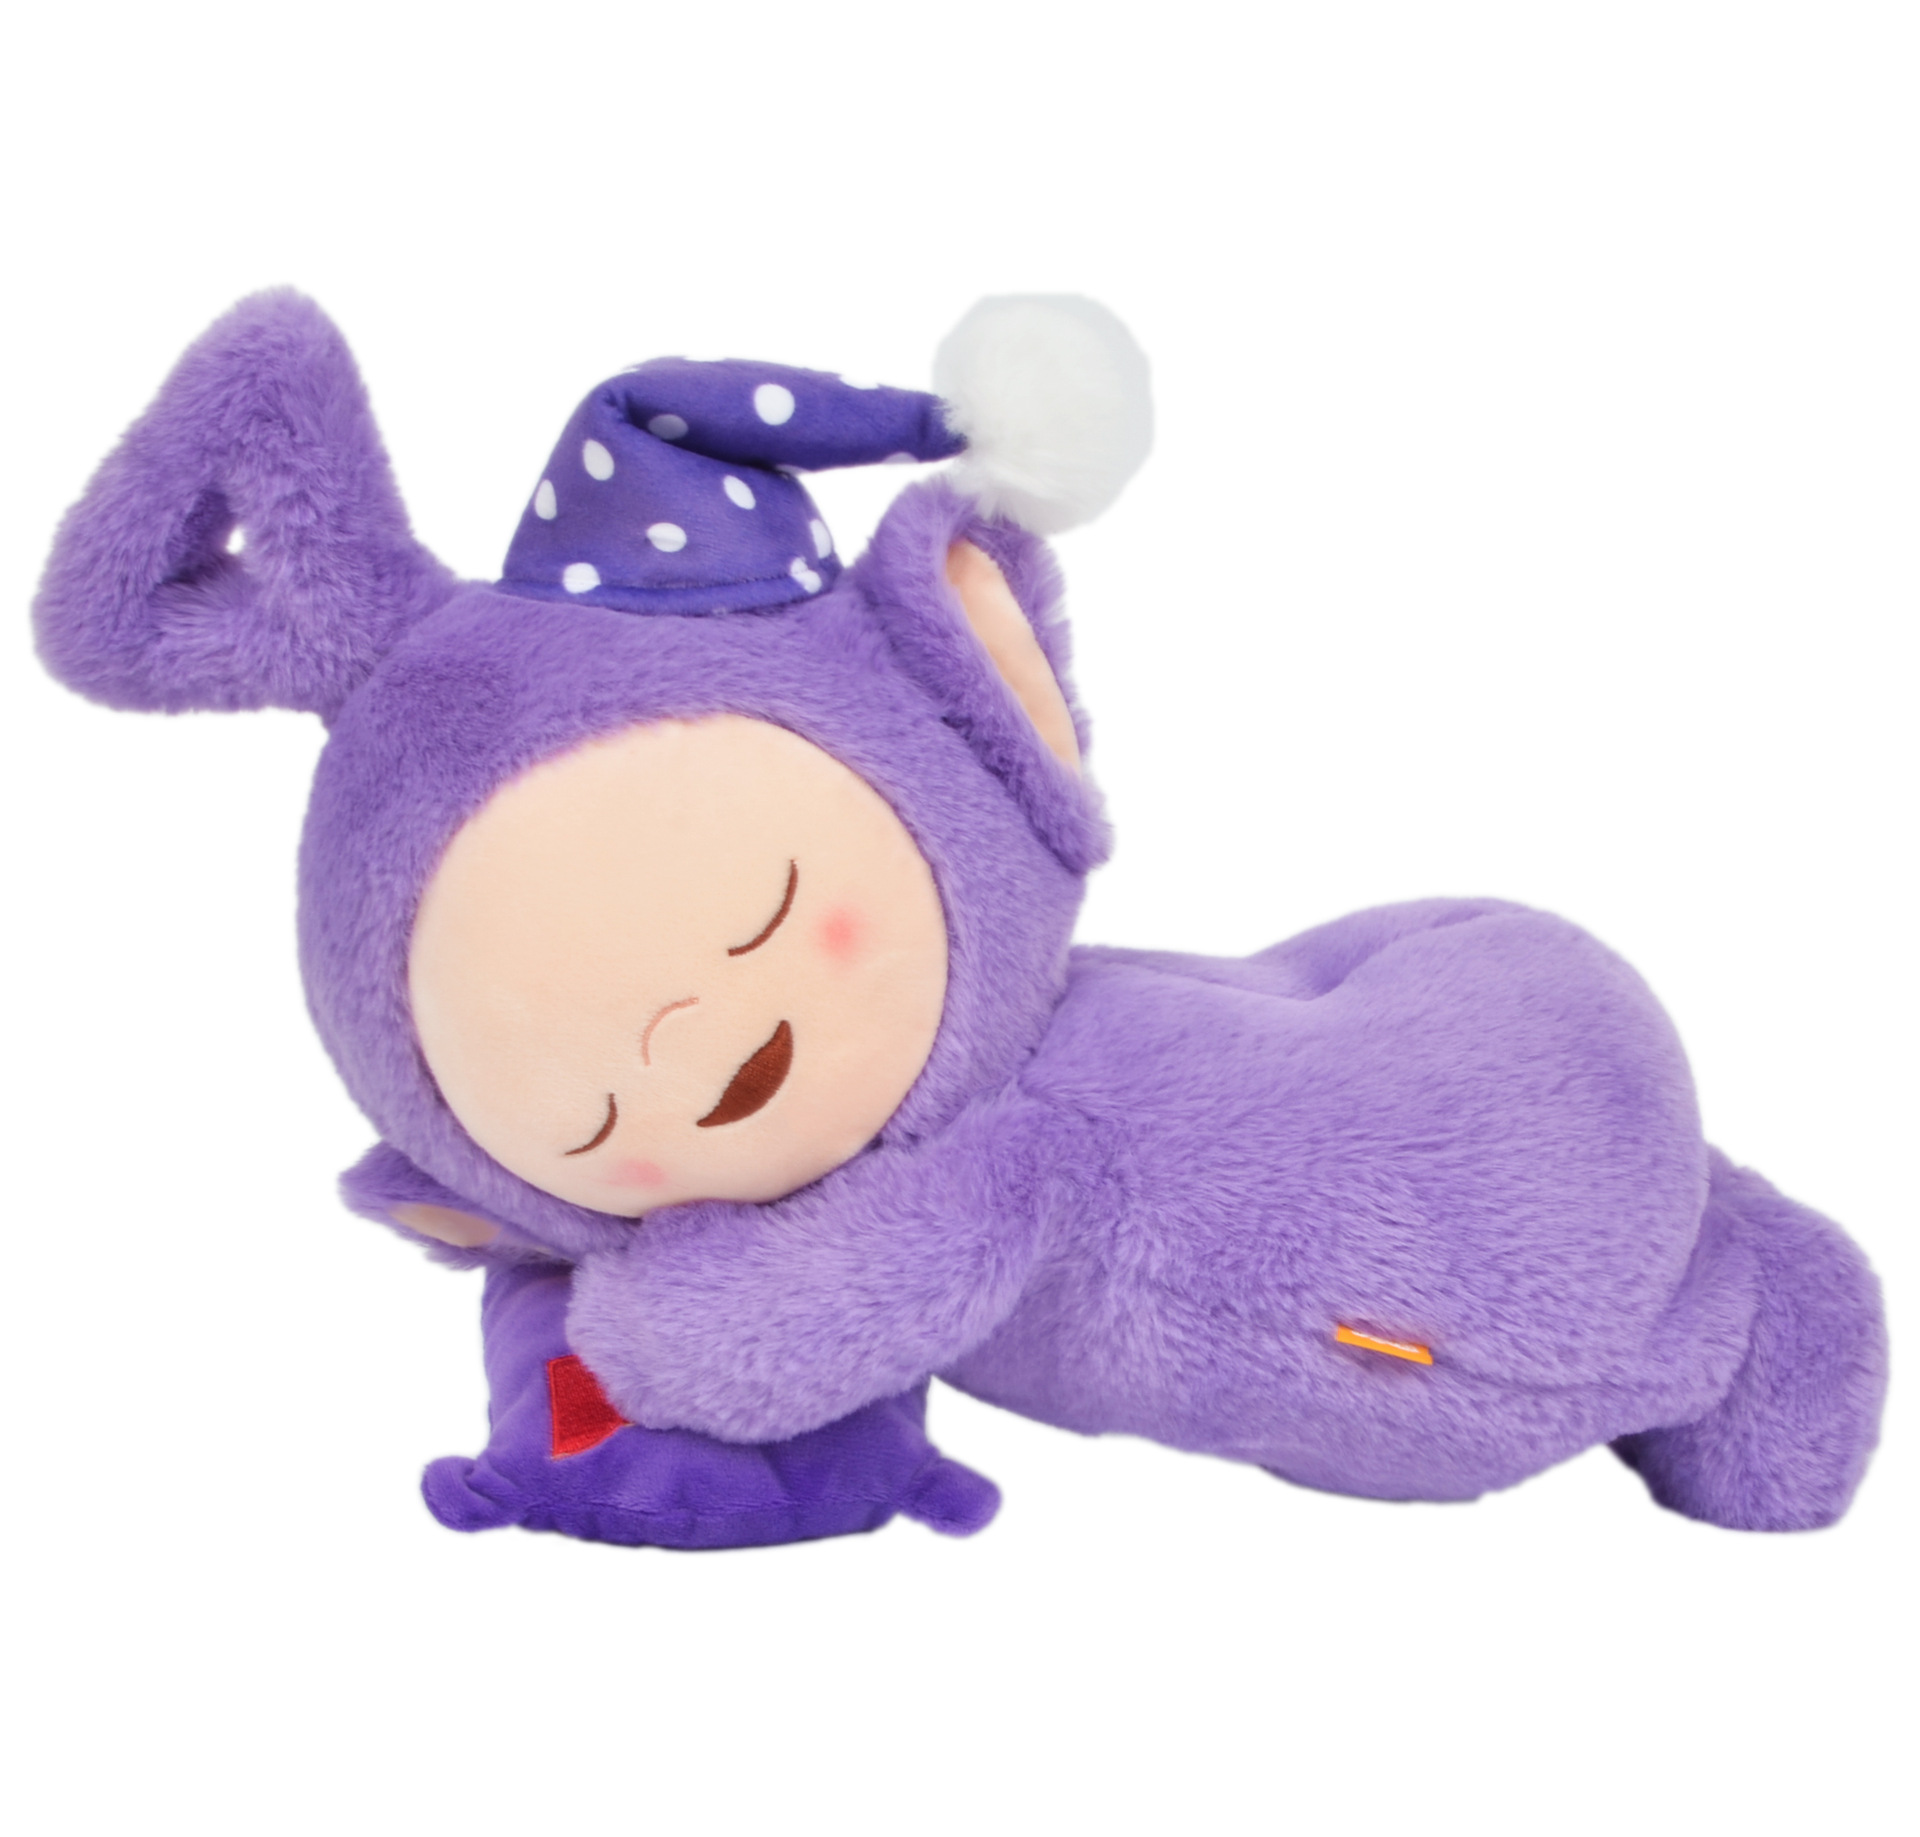 天线宝宝公仔趴睡毛绒玩具可爱玩偶抱枕睡觉安抚布娃娃创意儿童抱